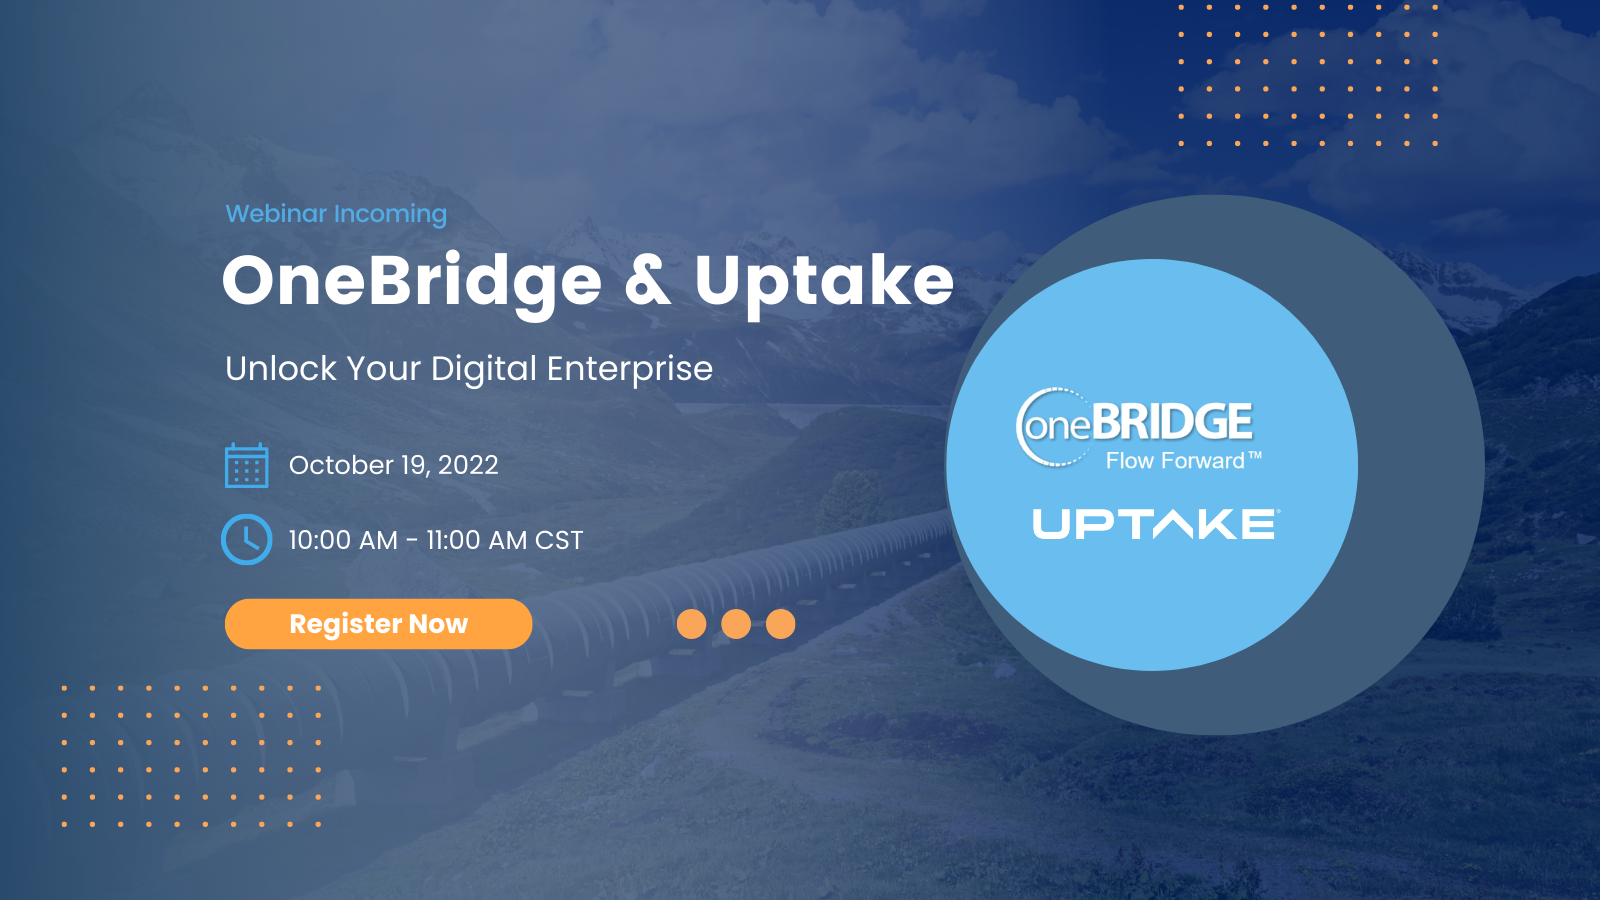 OneBridge & Uptake Webinar: Unlock Your Digital Enterprise